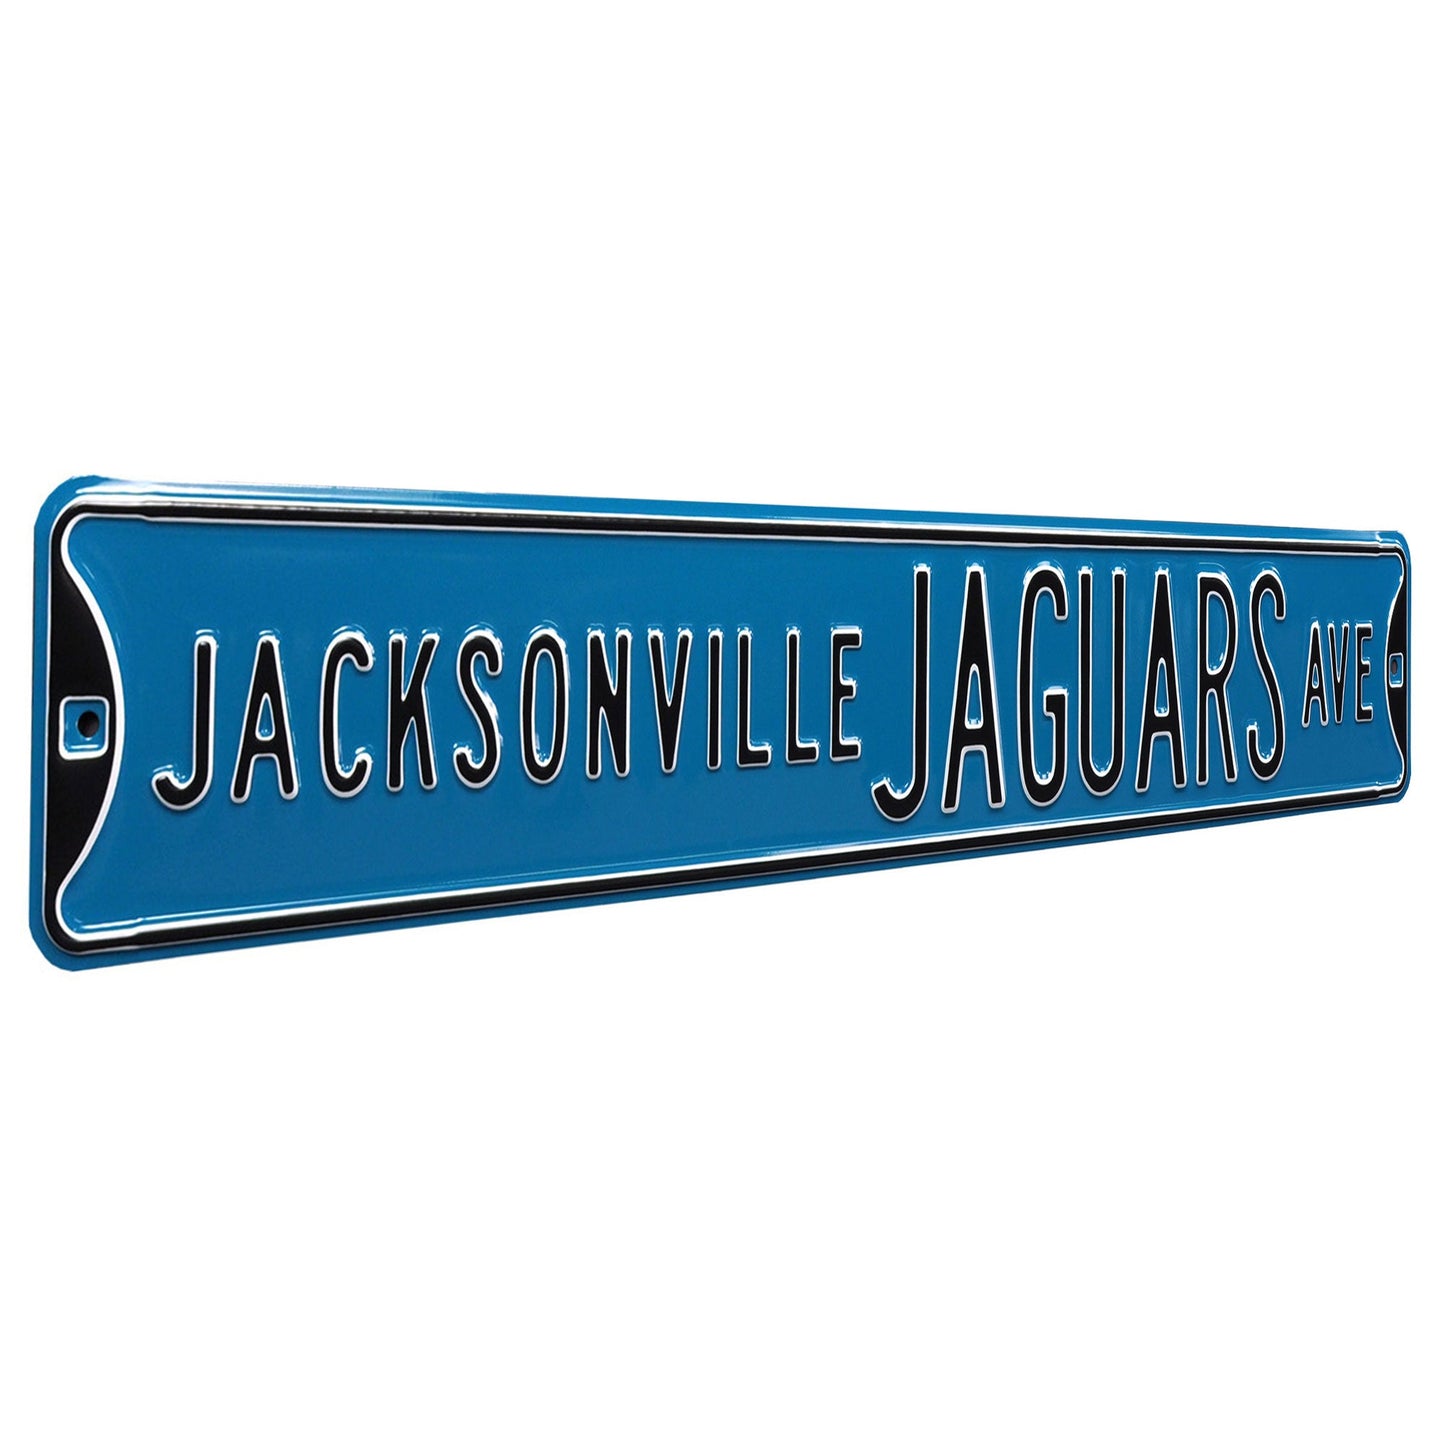 Jacksonville Jaguars - JAGUARS AVE - Embossed Steel Street Sign